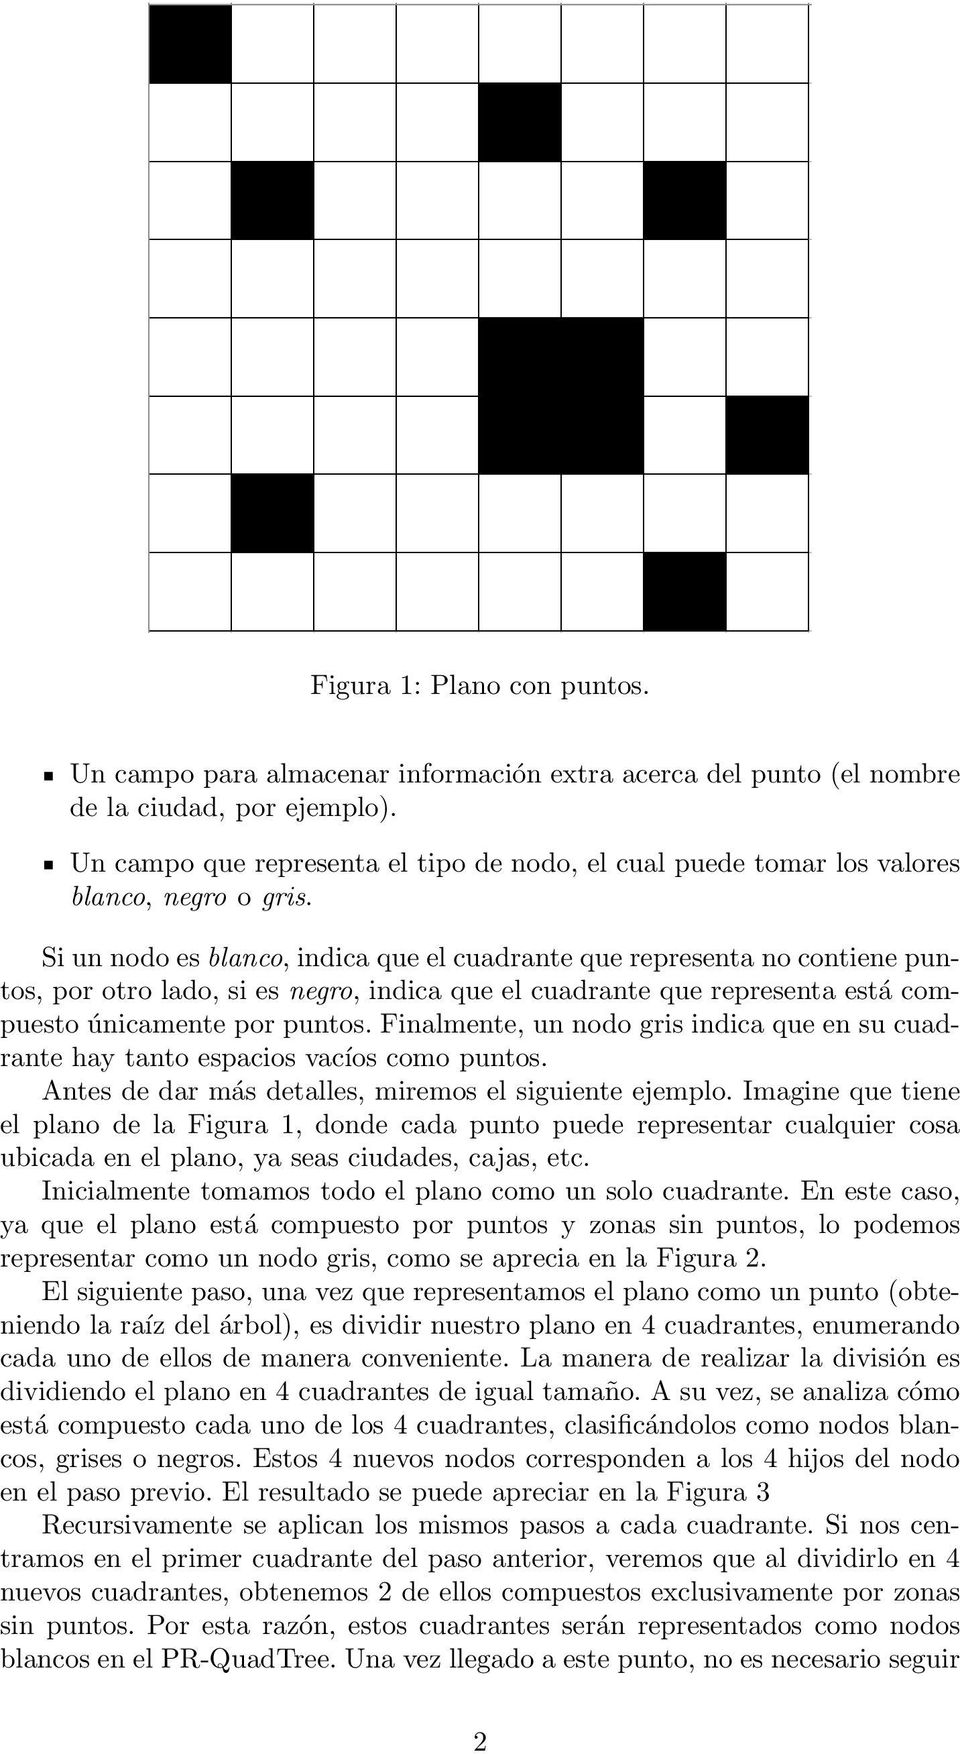 Si un nodo es blanco, indica que el cuadrante que representa no contiene puntos, por otro lado, si es negro, indica que el cuadrante que representa está compuesto únicamente por puntos.